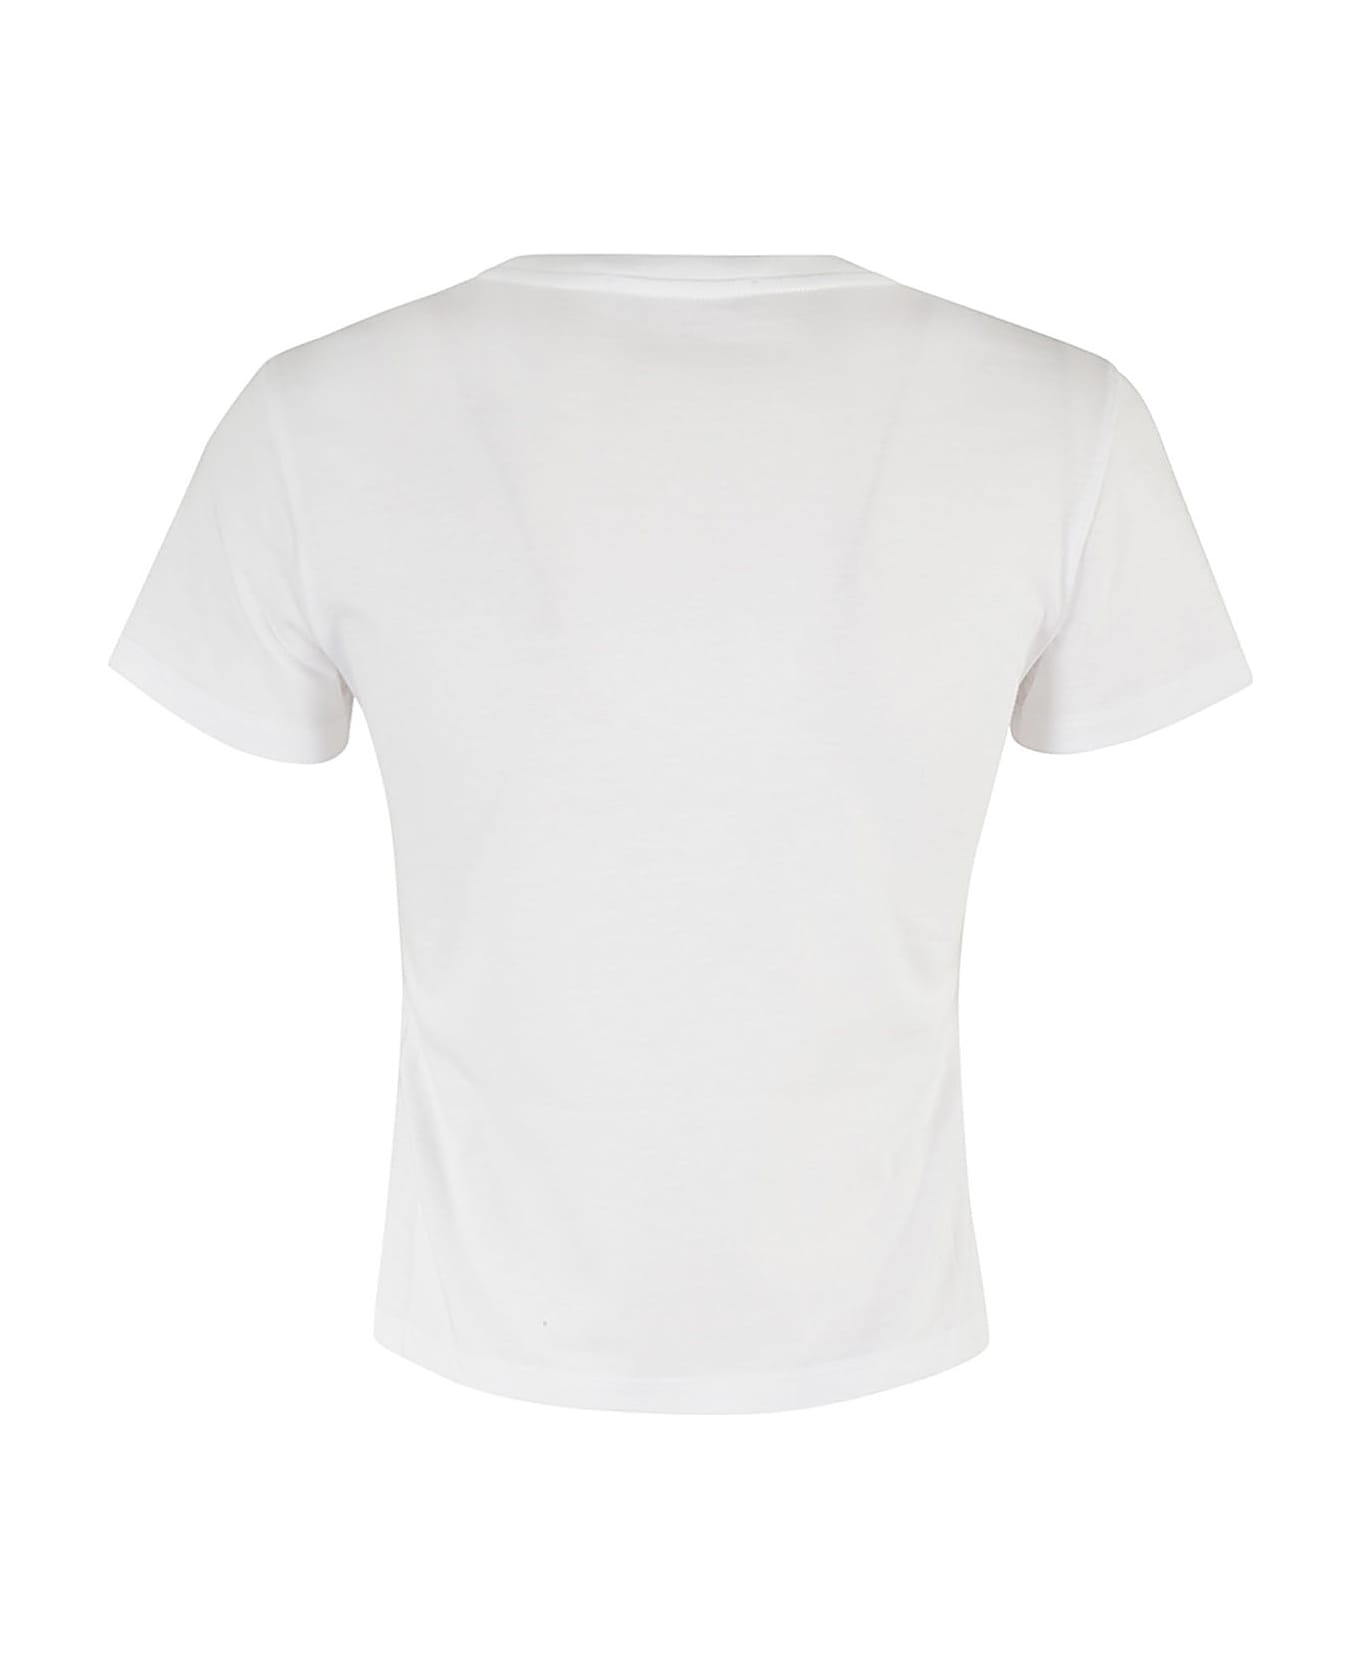 SSHEENA T Shirt - White Tシャツ